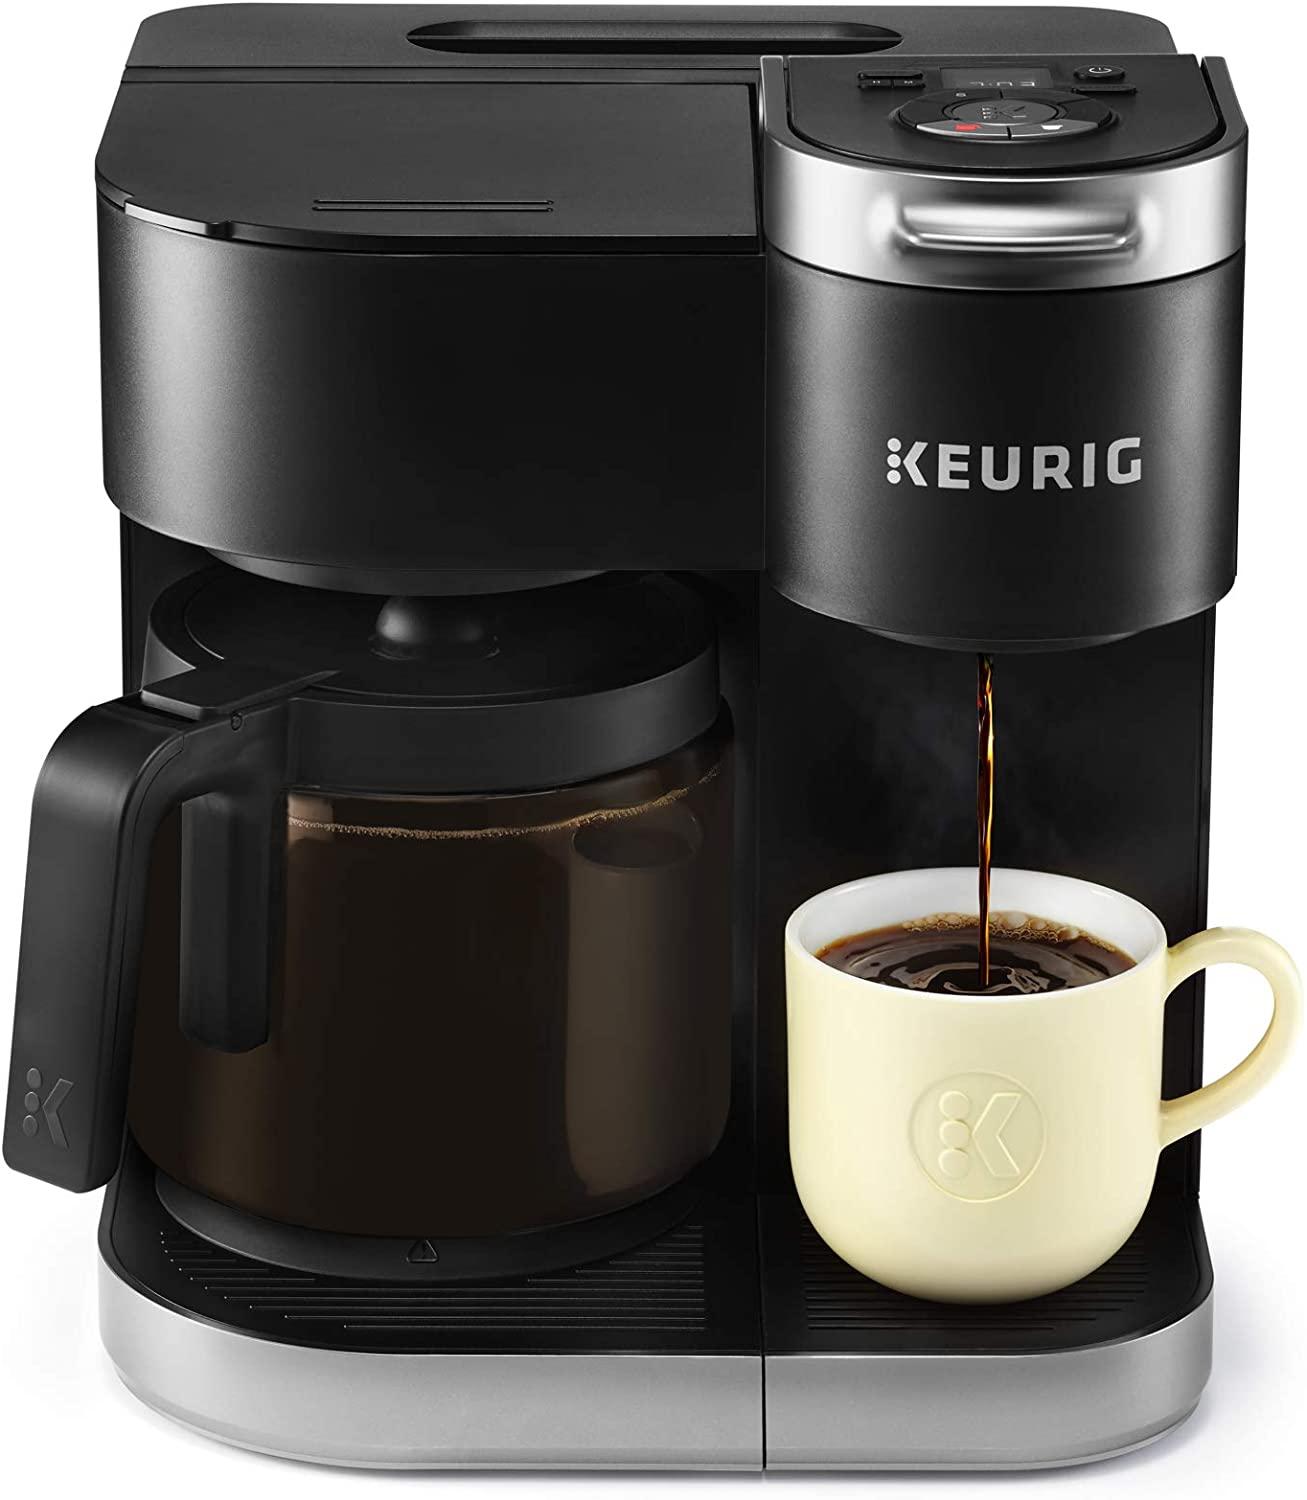 Reservoir Tab for Keurig K-Duo Coffee Maker 3d model